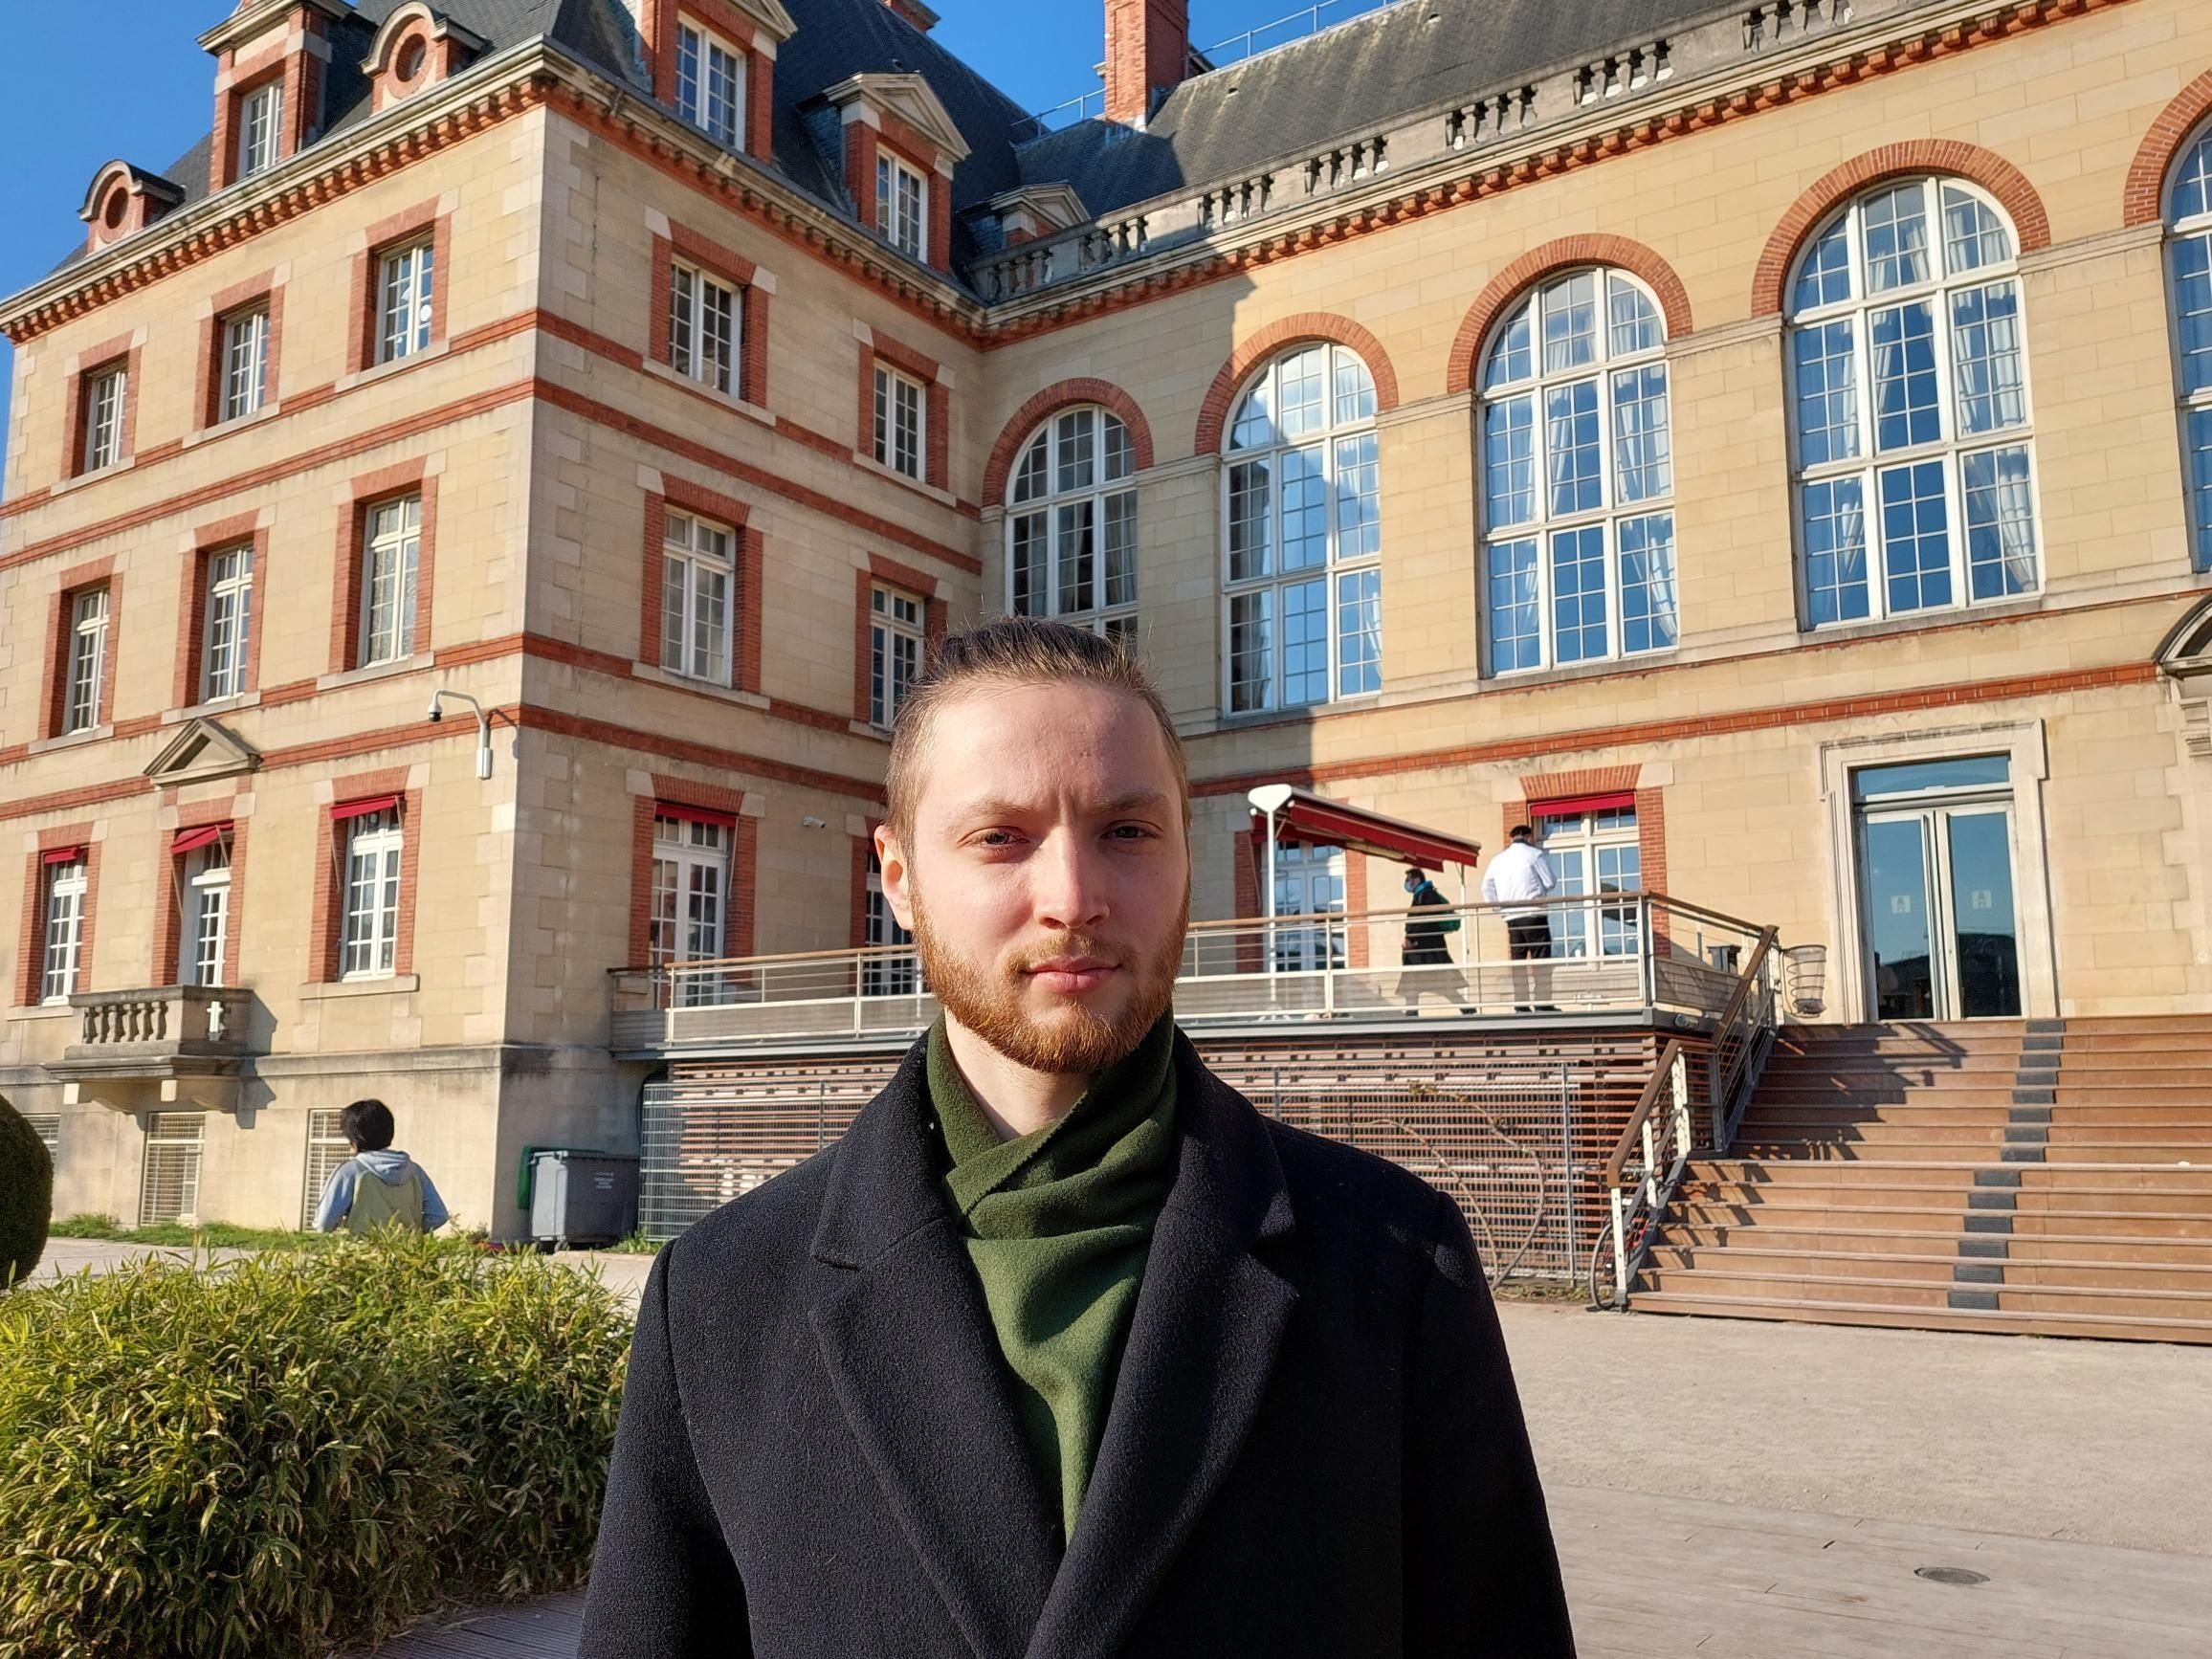 Cité internationale universitaire de Paris (XIVe), le 7 mars 2022. Anton, 23 ans, est l'un des 20 étudiants et chercheurs ukrainiens accueillis sur le campus, qui lance plusieurs initiatives solidaires, notamment une campagne de dons à l'échelle du public. LP/E.S.